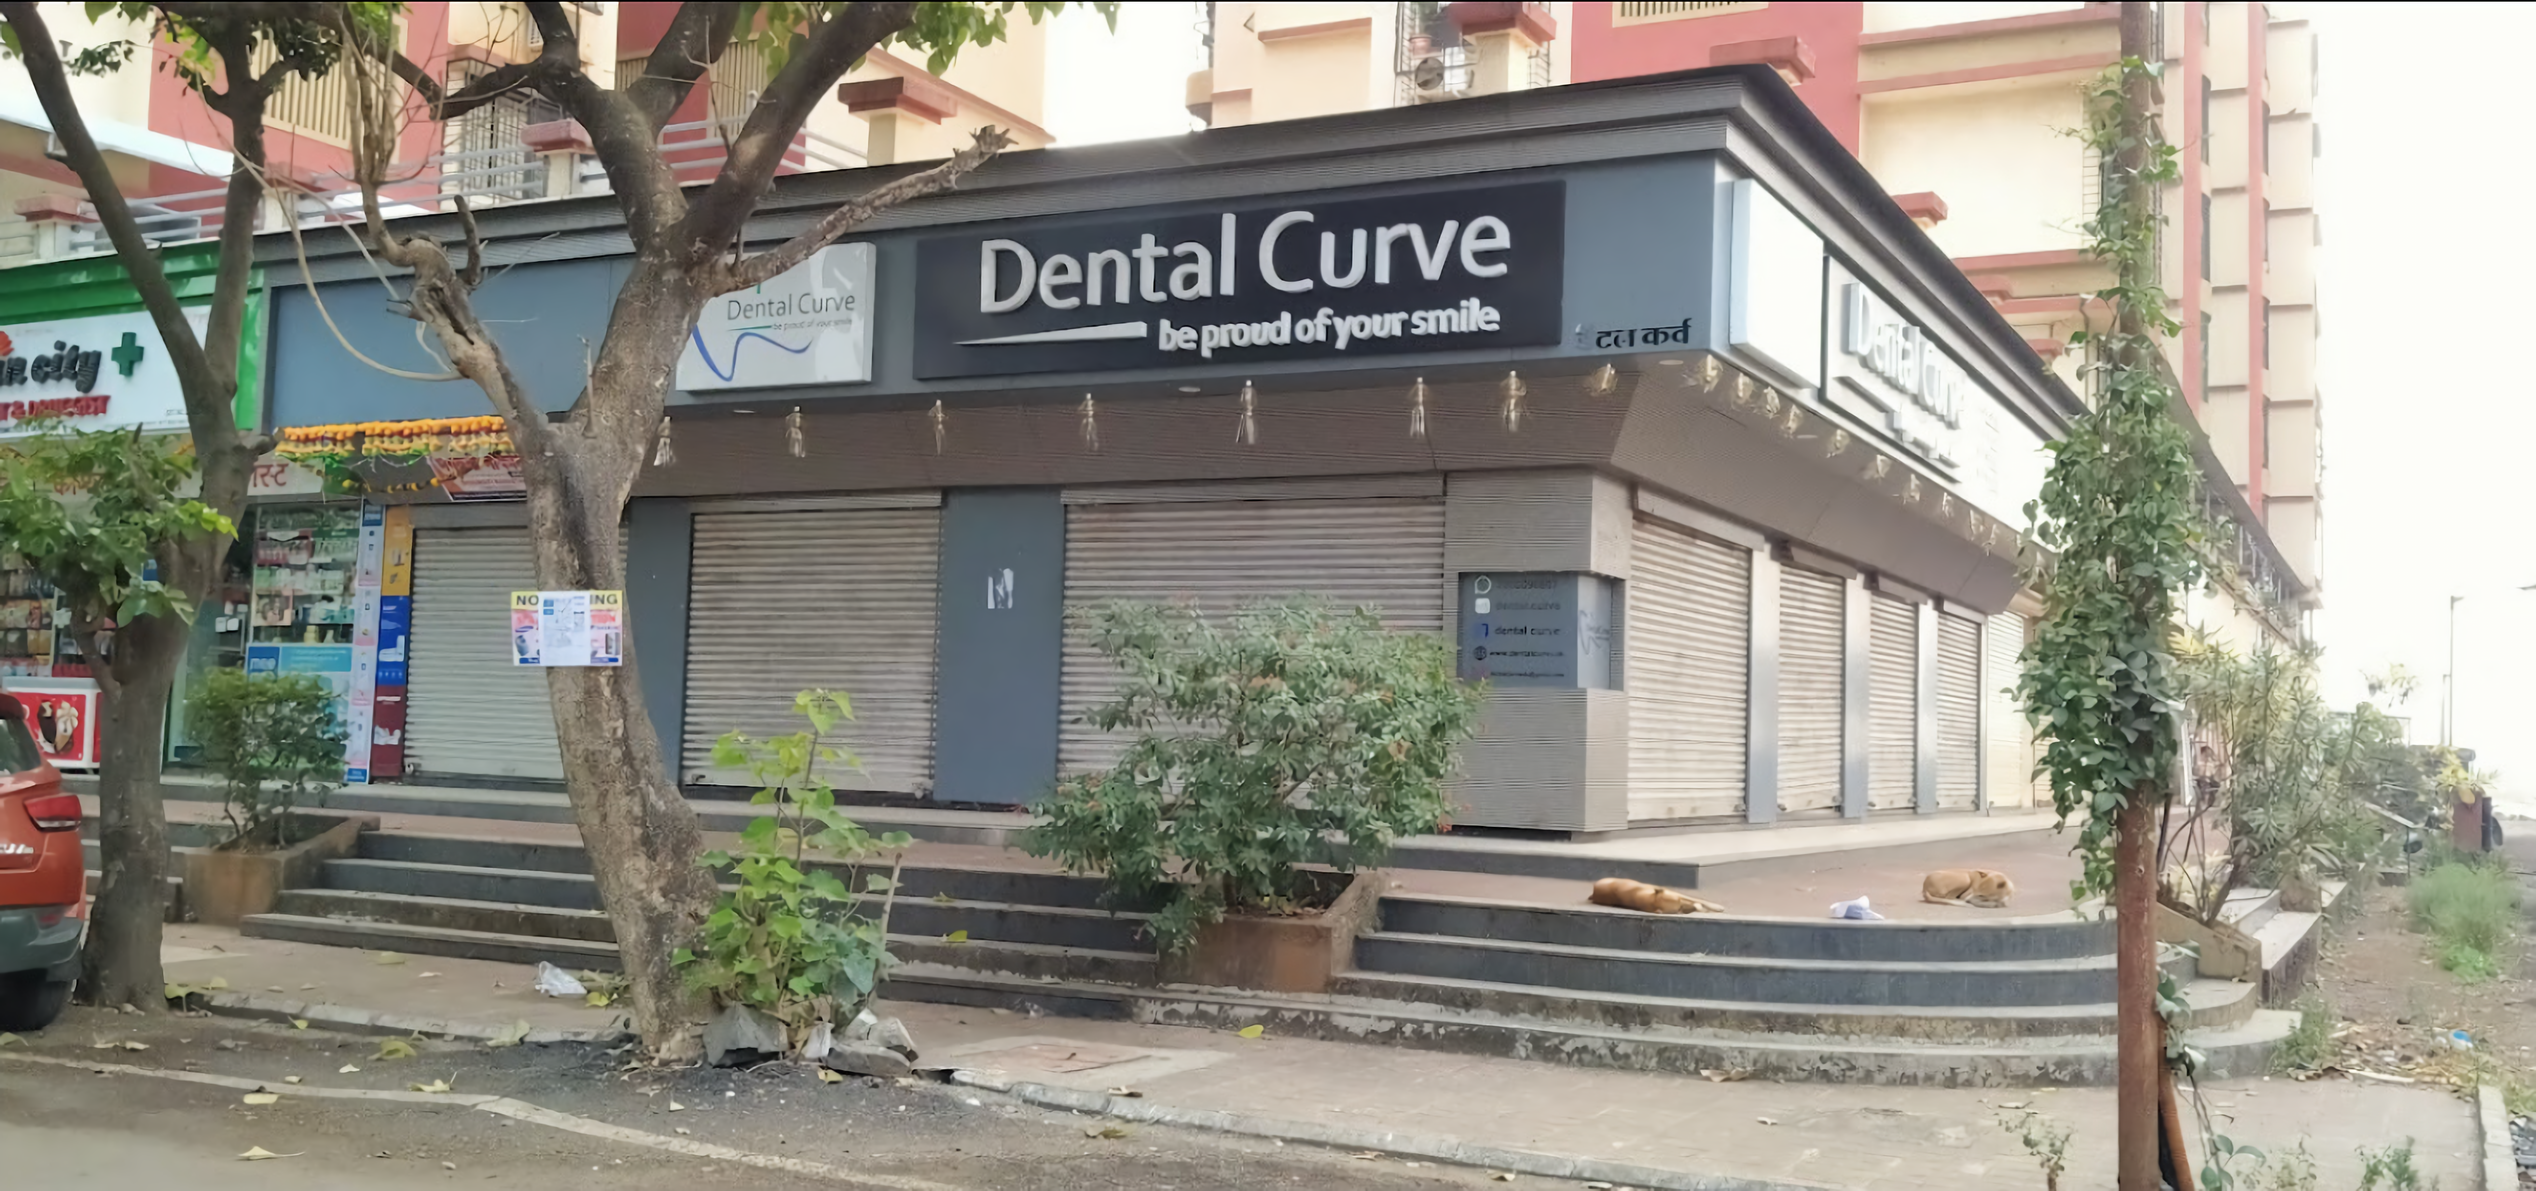 Dental Curve